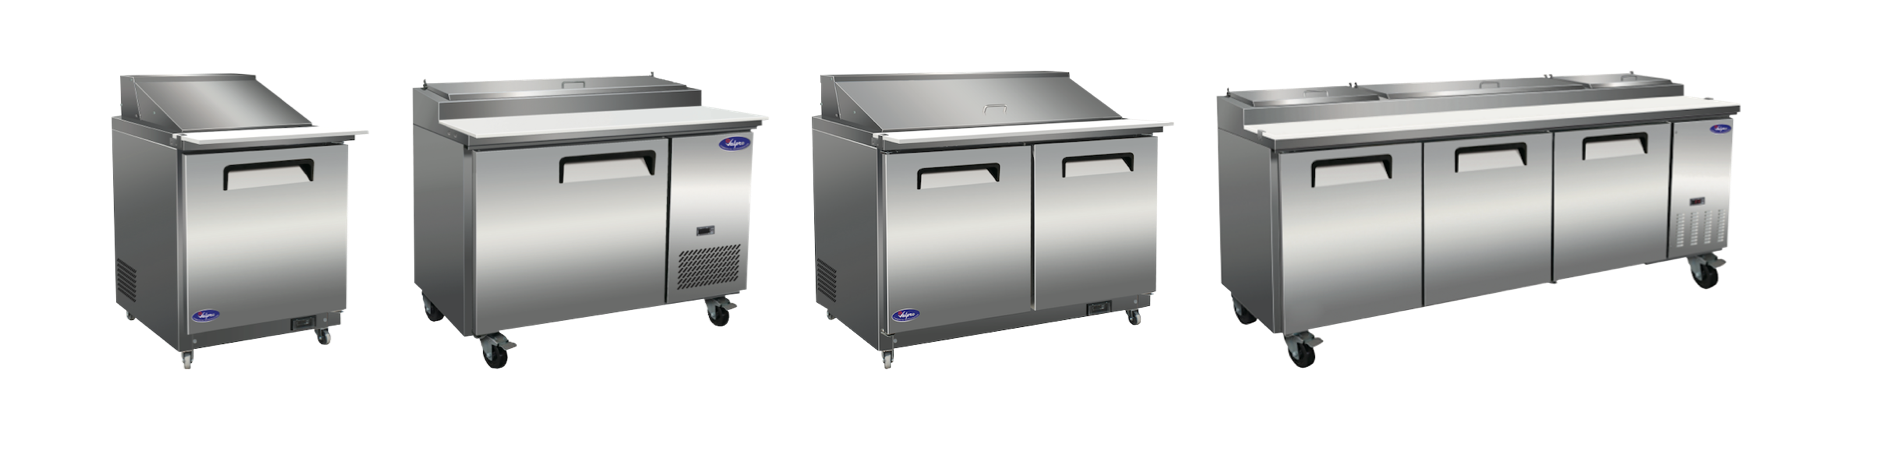 Homepage-Food Preparation Tables Slide